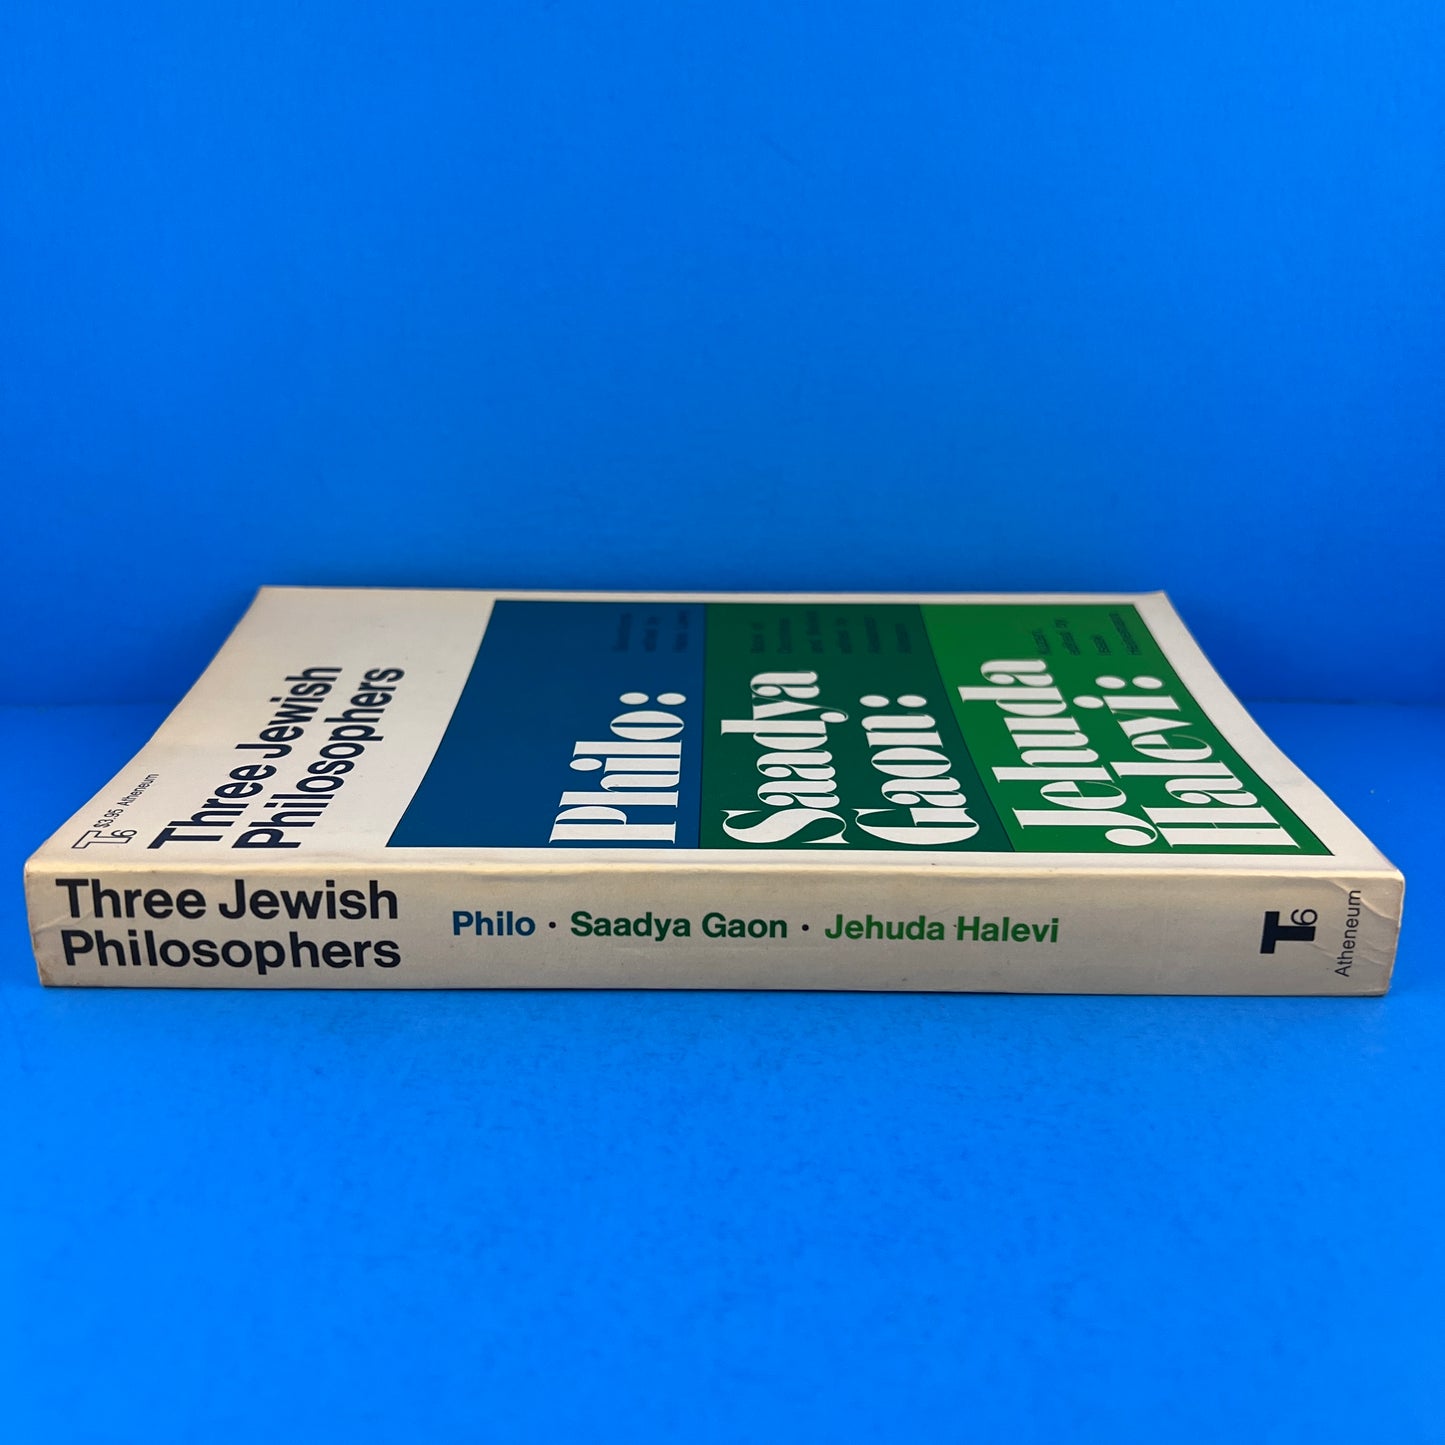 Three Jewish Philosophers: Philo, Saadya Gaon, Jehuda Halevi